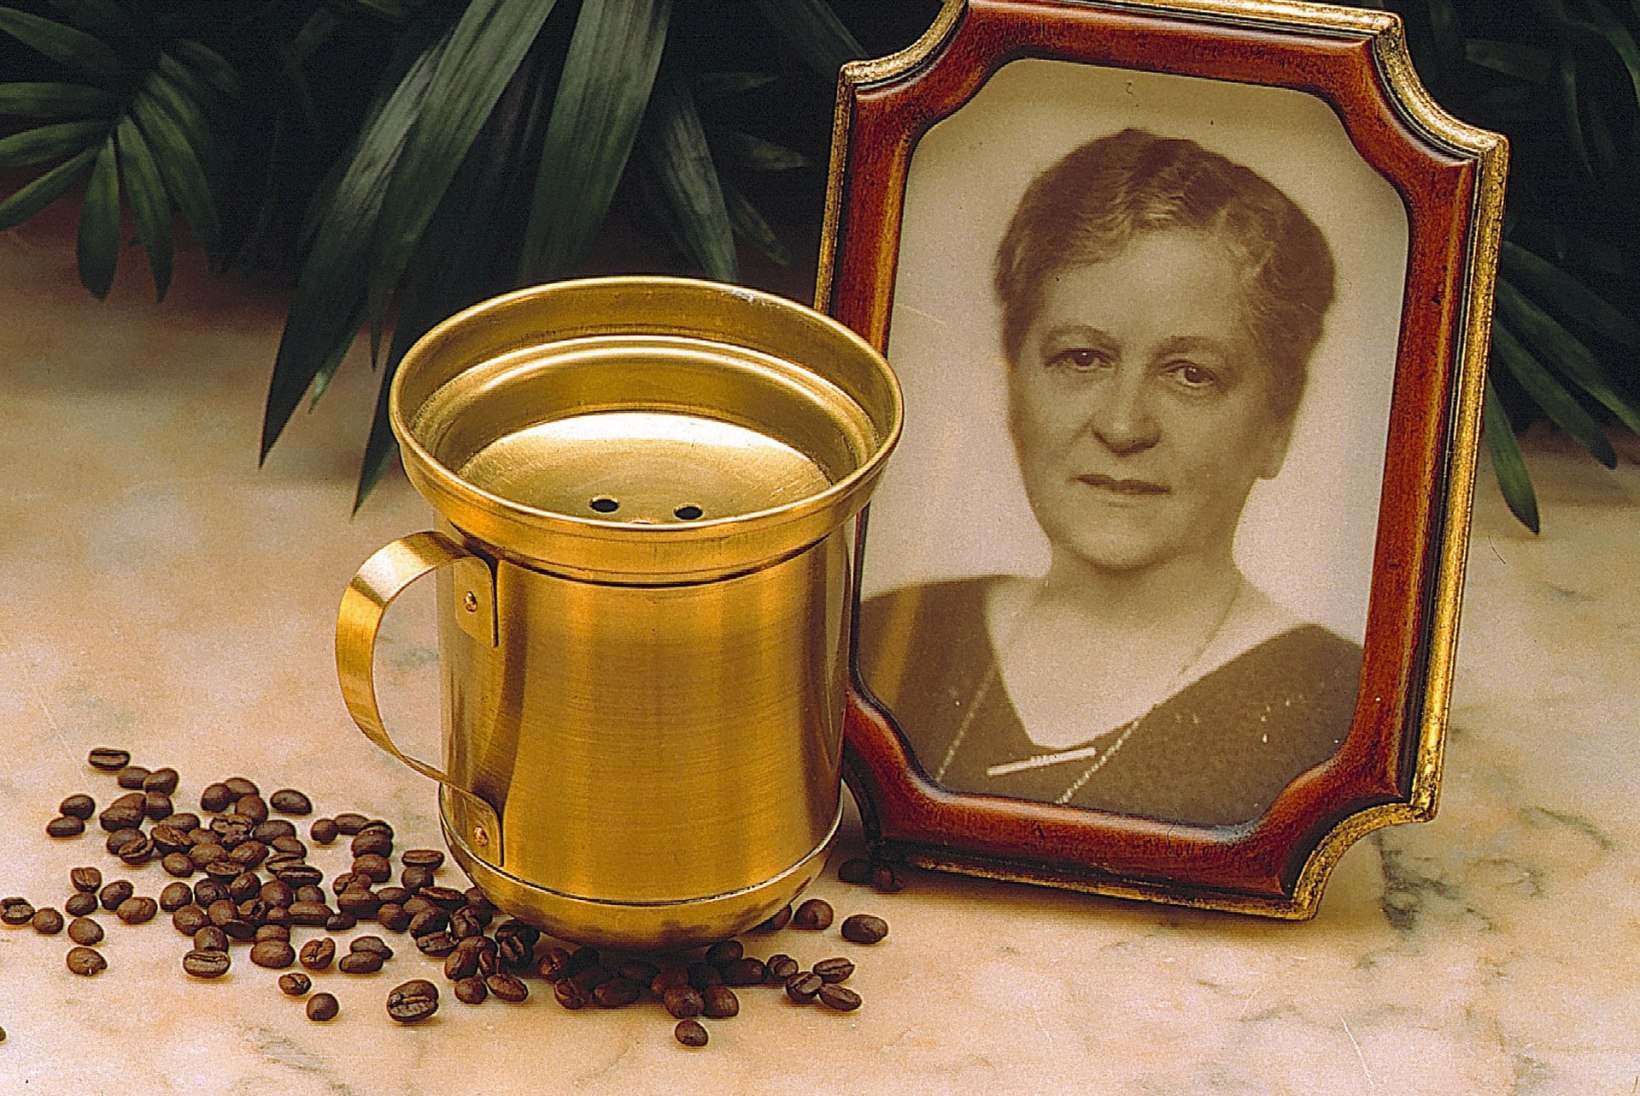 Naine, kes leiutas tänapäevase kohvivalmistamise meetodi